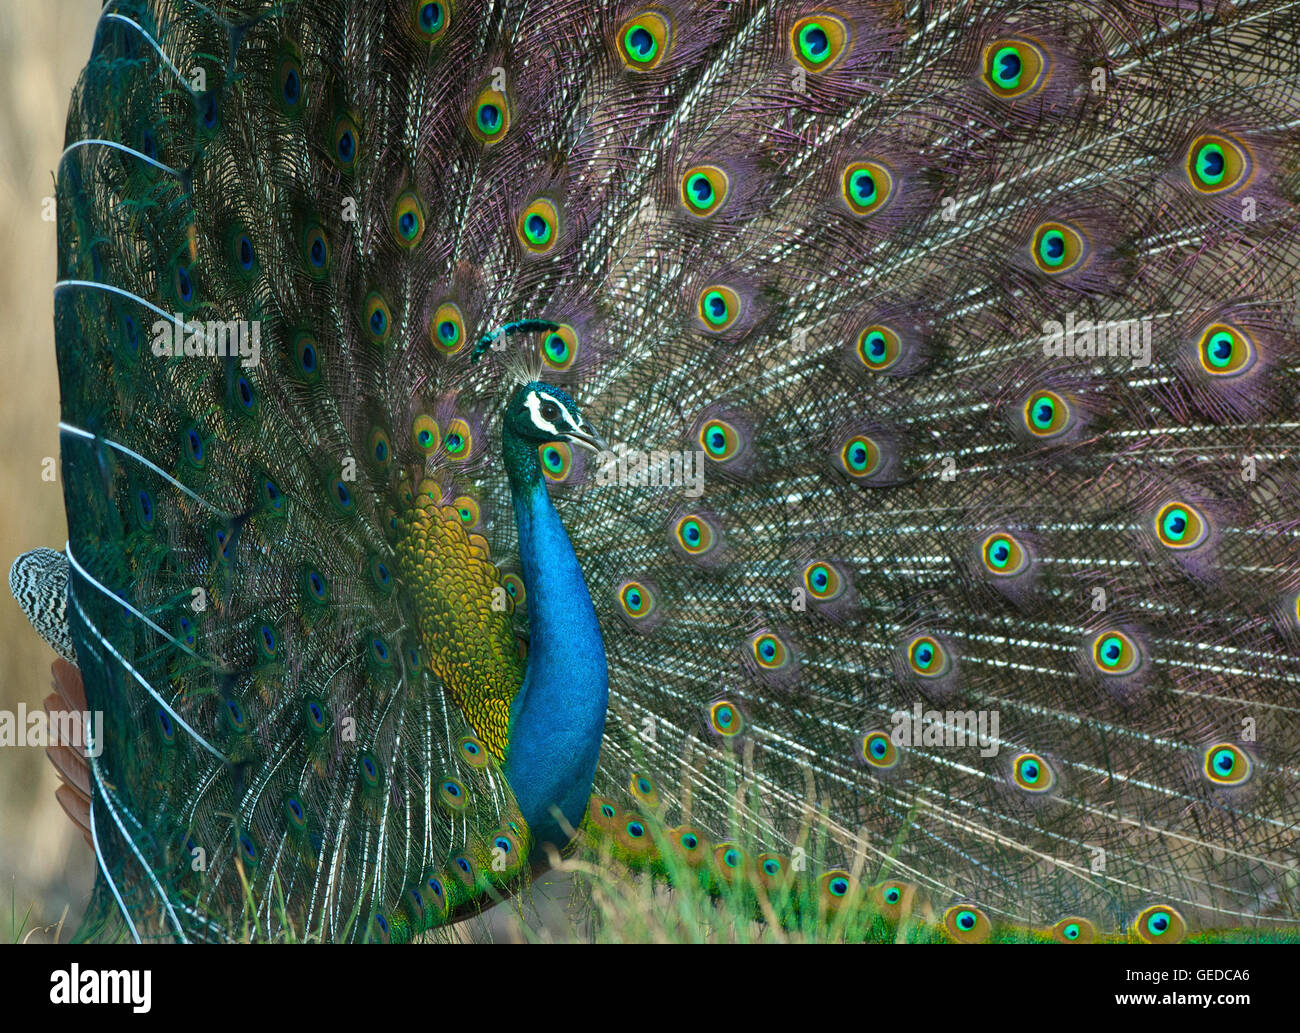 L'image de paons Indiens ( Pavo cristatus ) a été prise dans le parc national de Bandavgarh, Inde Banque D'Images